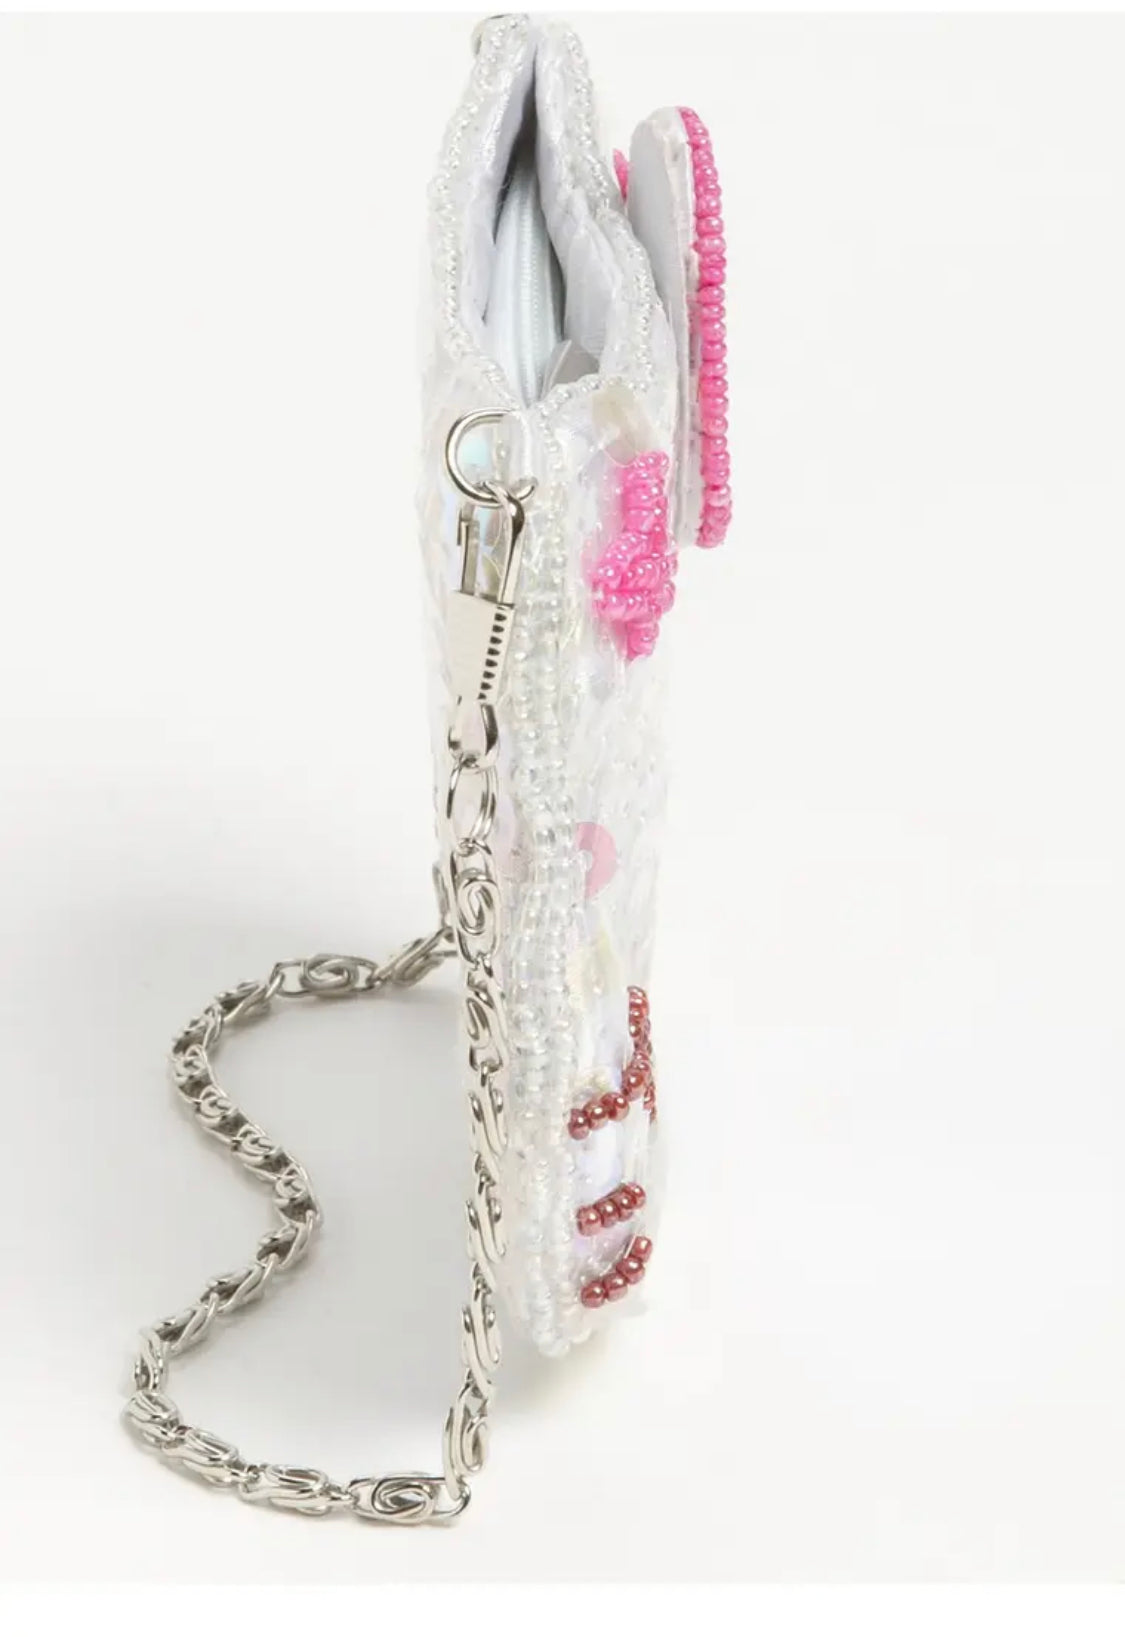 NWT Sanrio Hello Kitty Sequin Wristlet Wallet Bag Coin Purse Pink